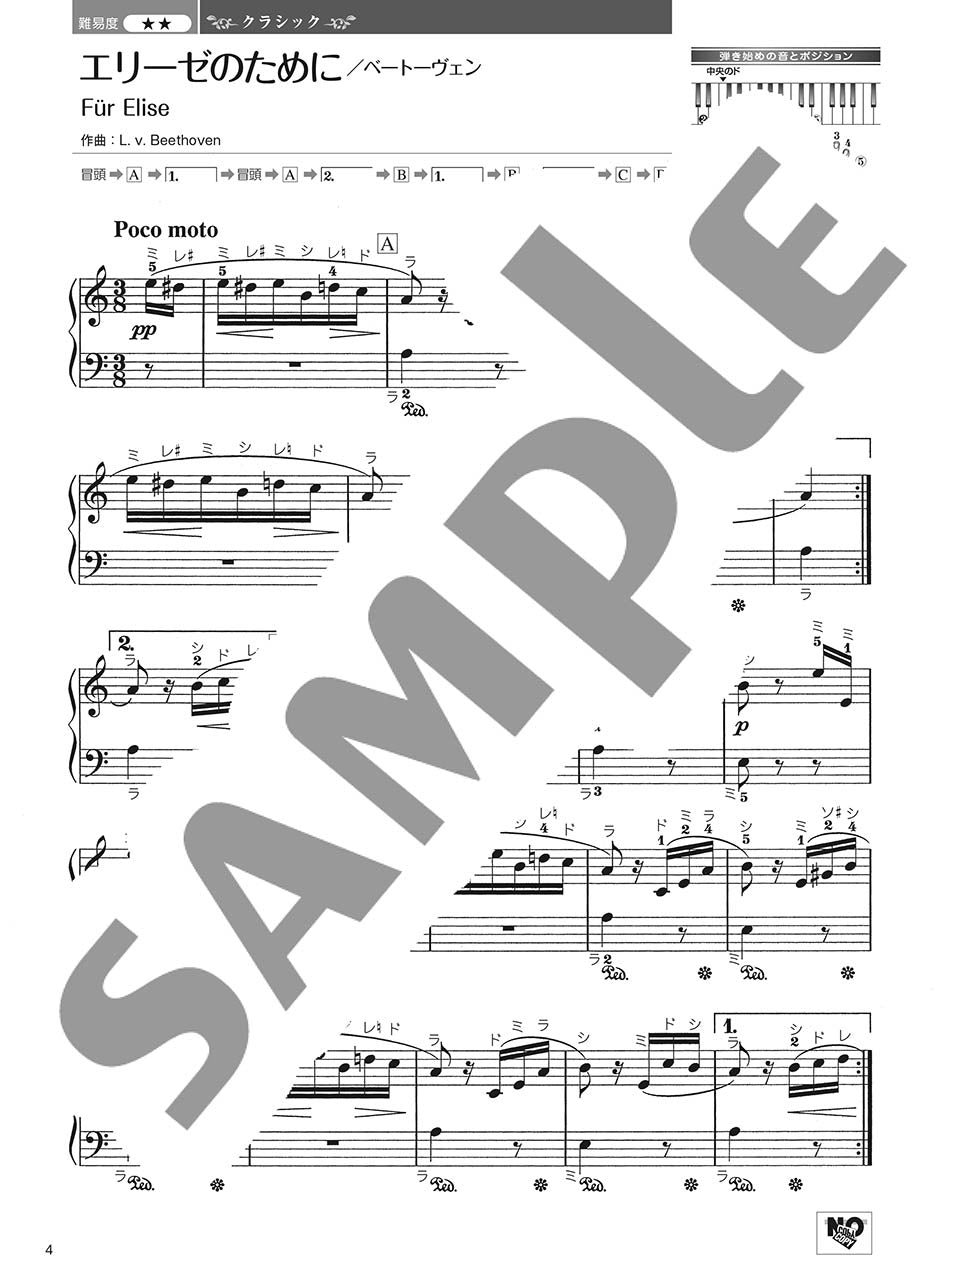 やさしく弾ける 大人のためのピアノレパートリー60 Vol.1_2